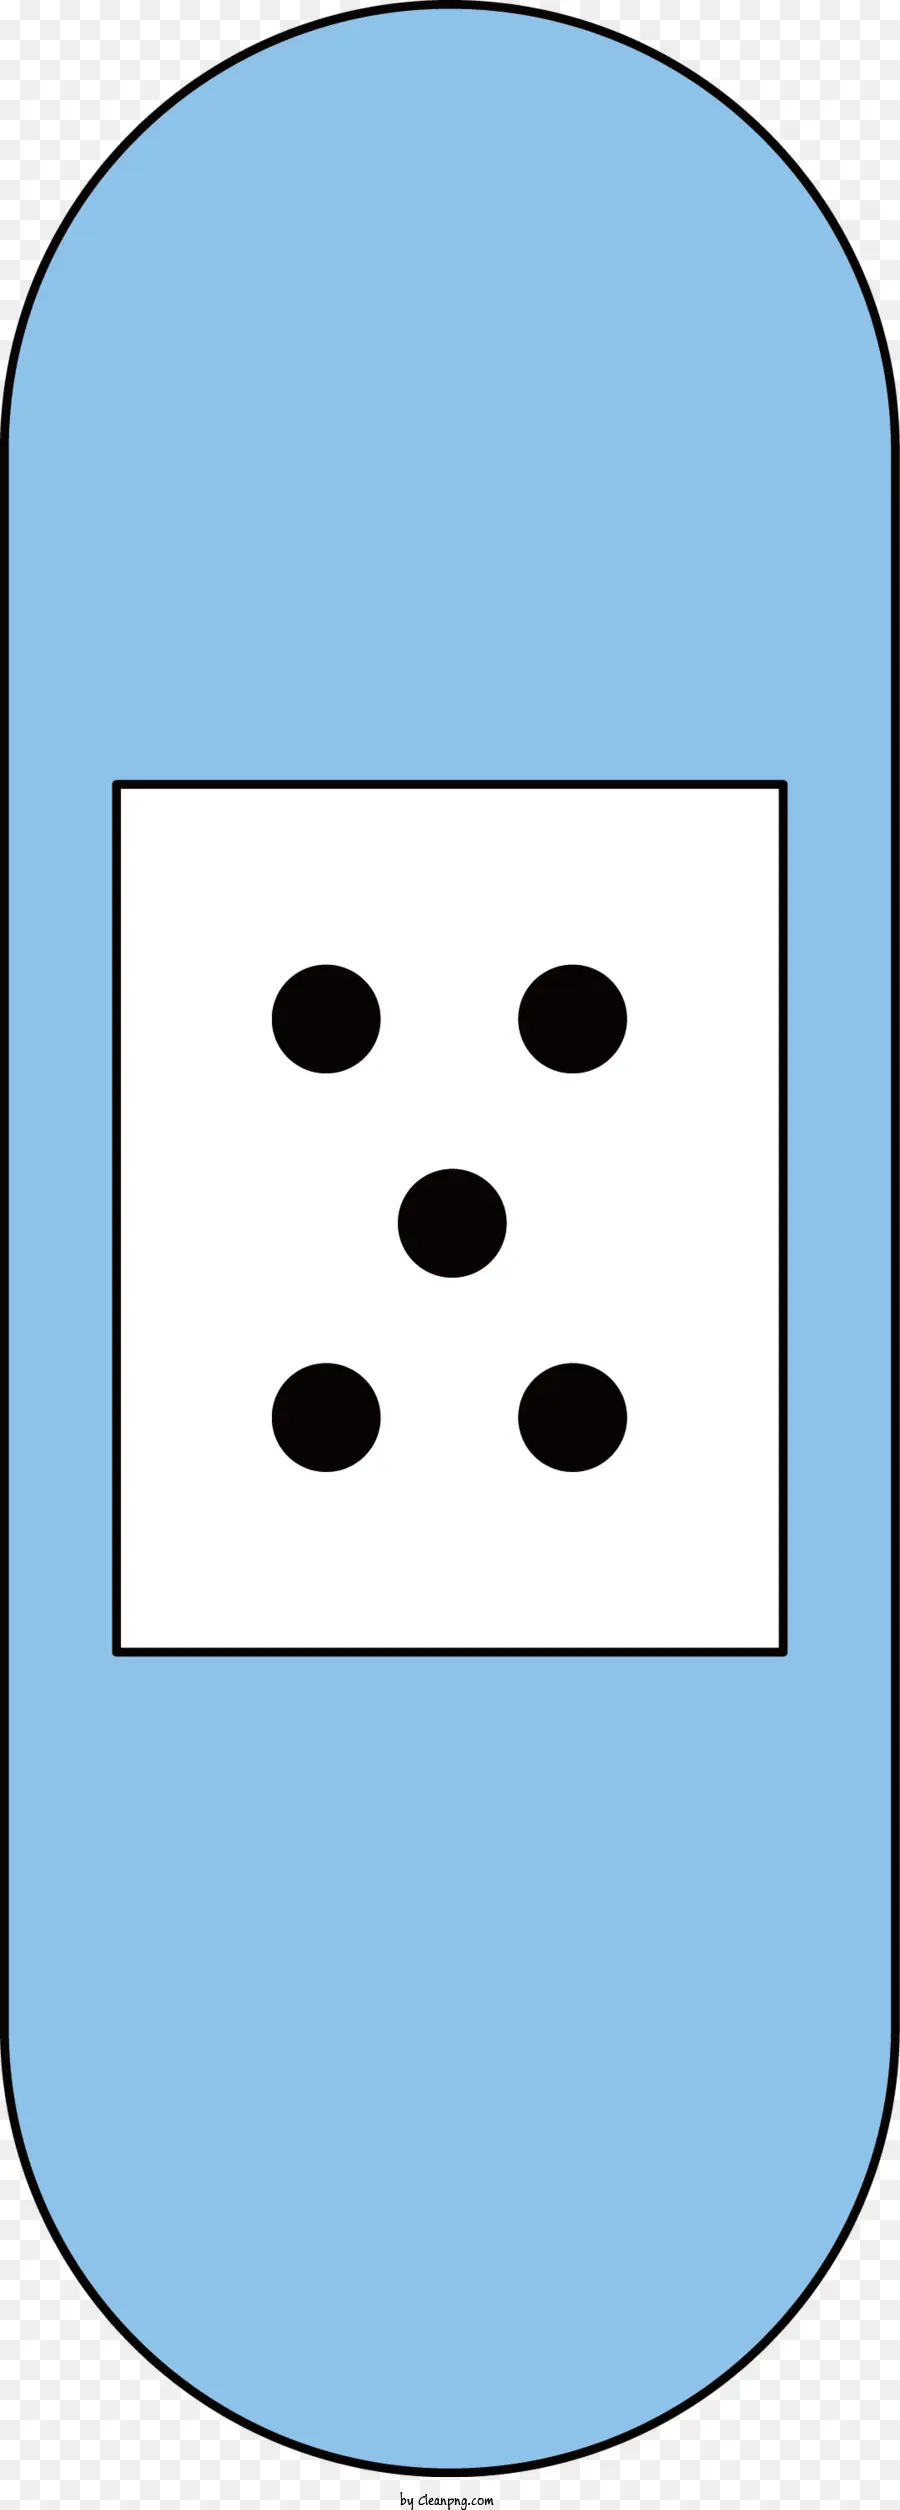 Blau und weiße quadratische schwarze Punktmitte weiße Seite Blau Seite - Blau -weißes Quadrat mit schwarzen und weißen Punkten